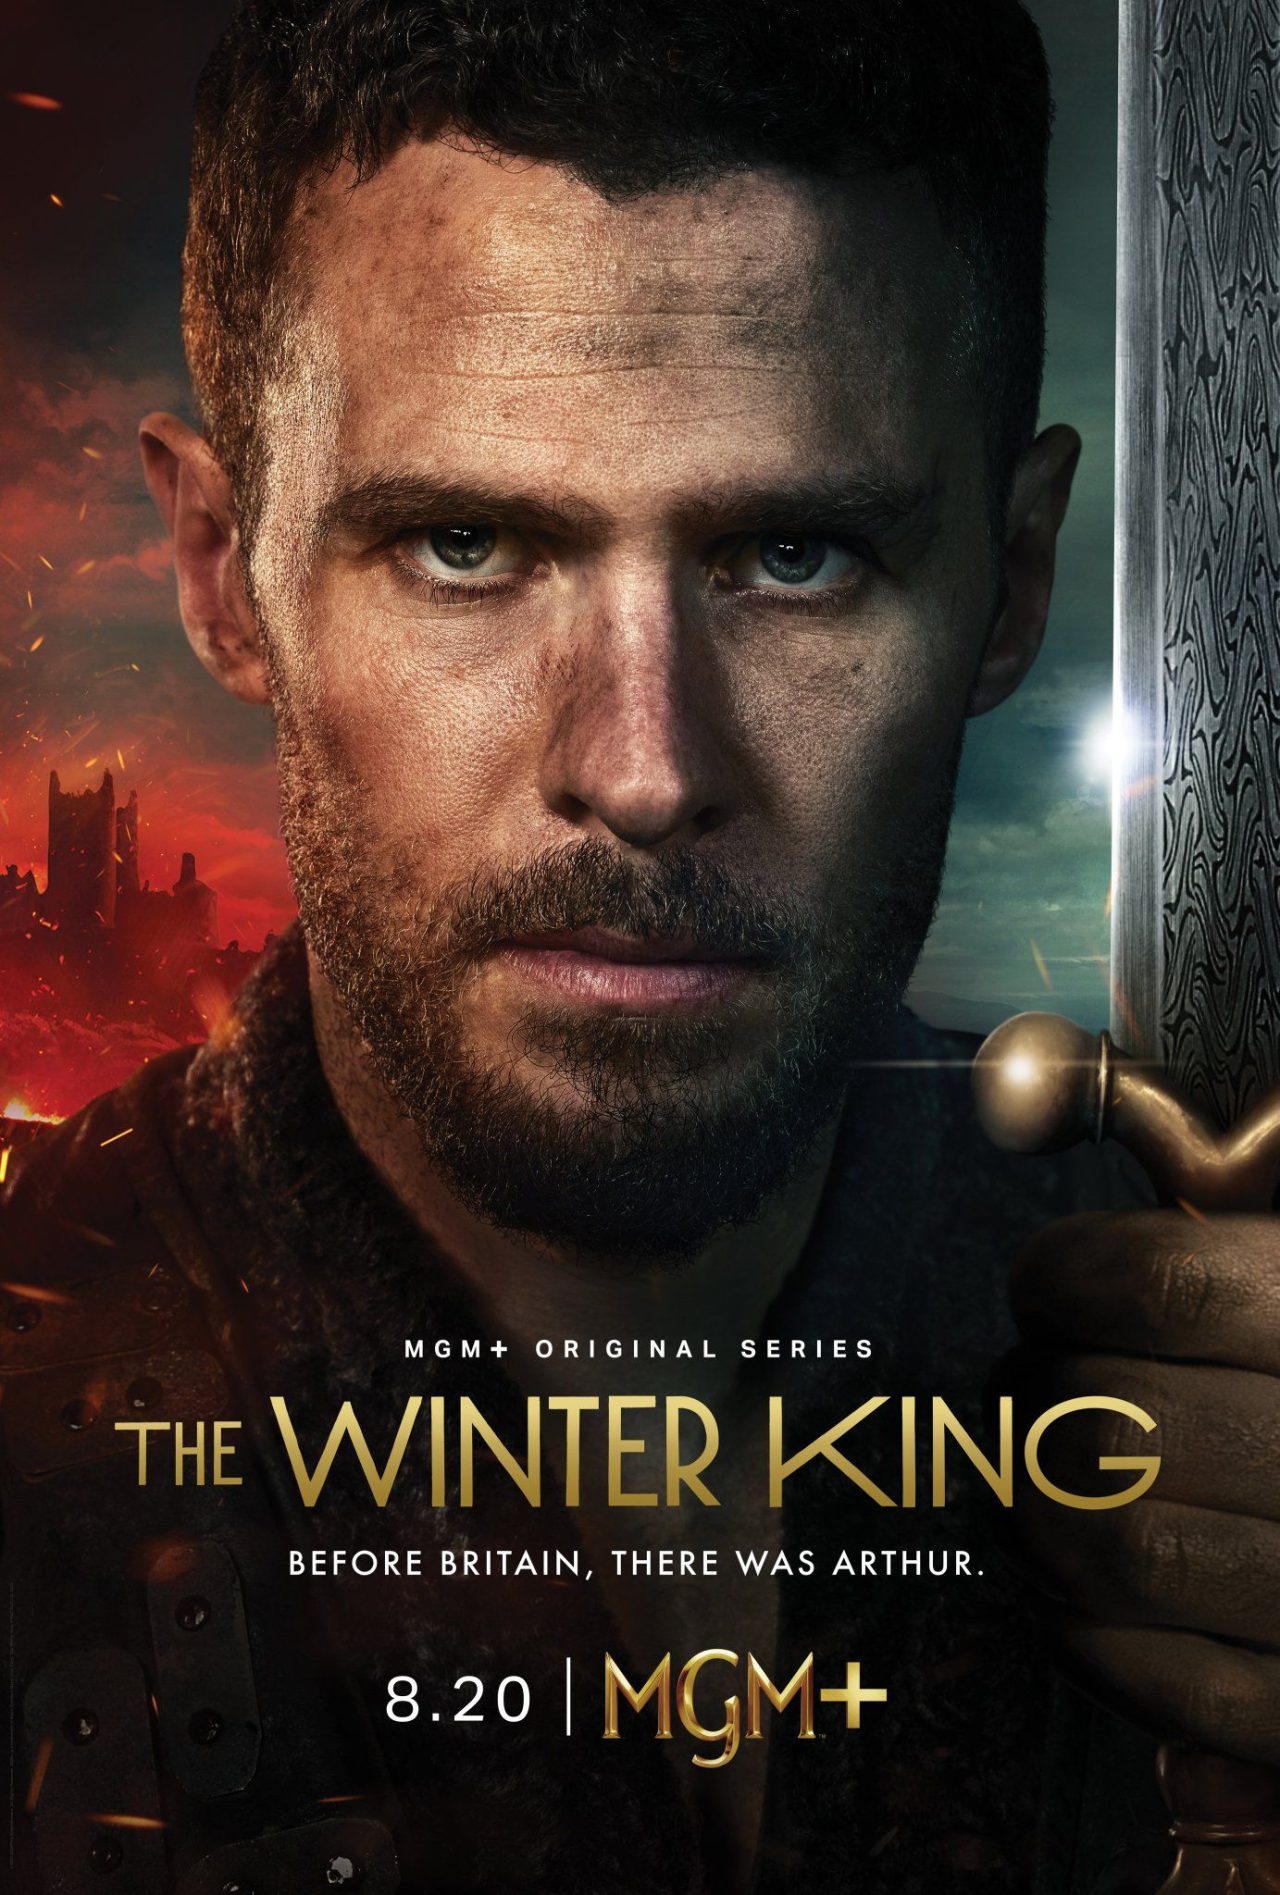 The Winter King: Trailer zur neuen Serie nach den beliebten Artus-Chroniken